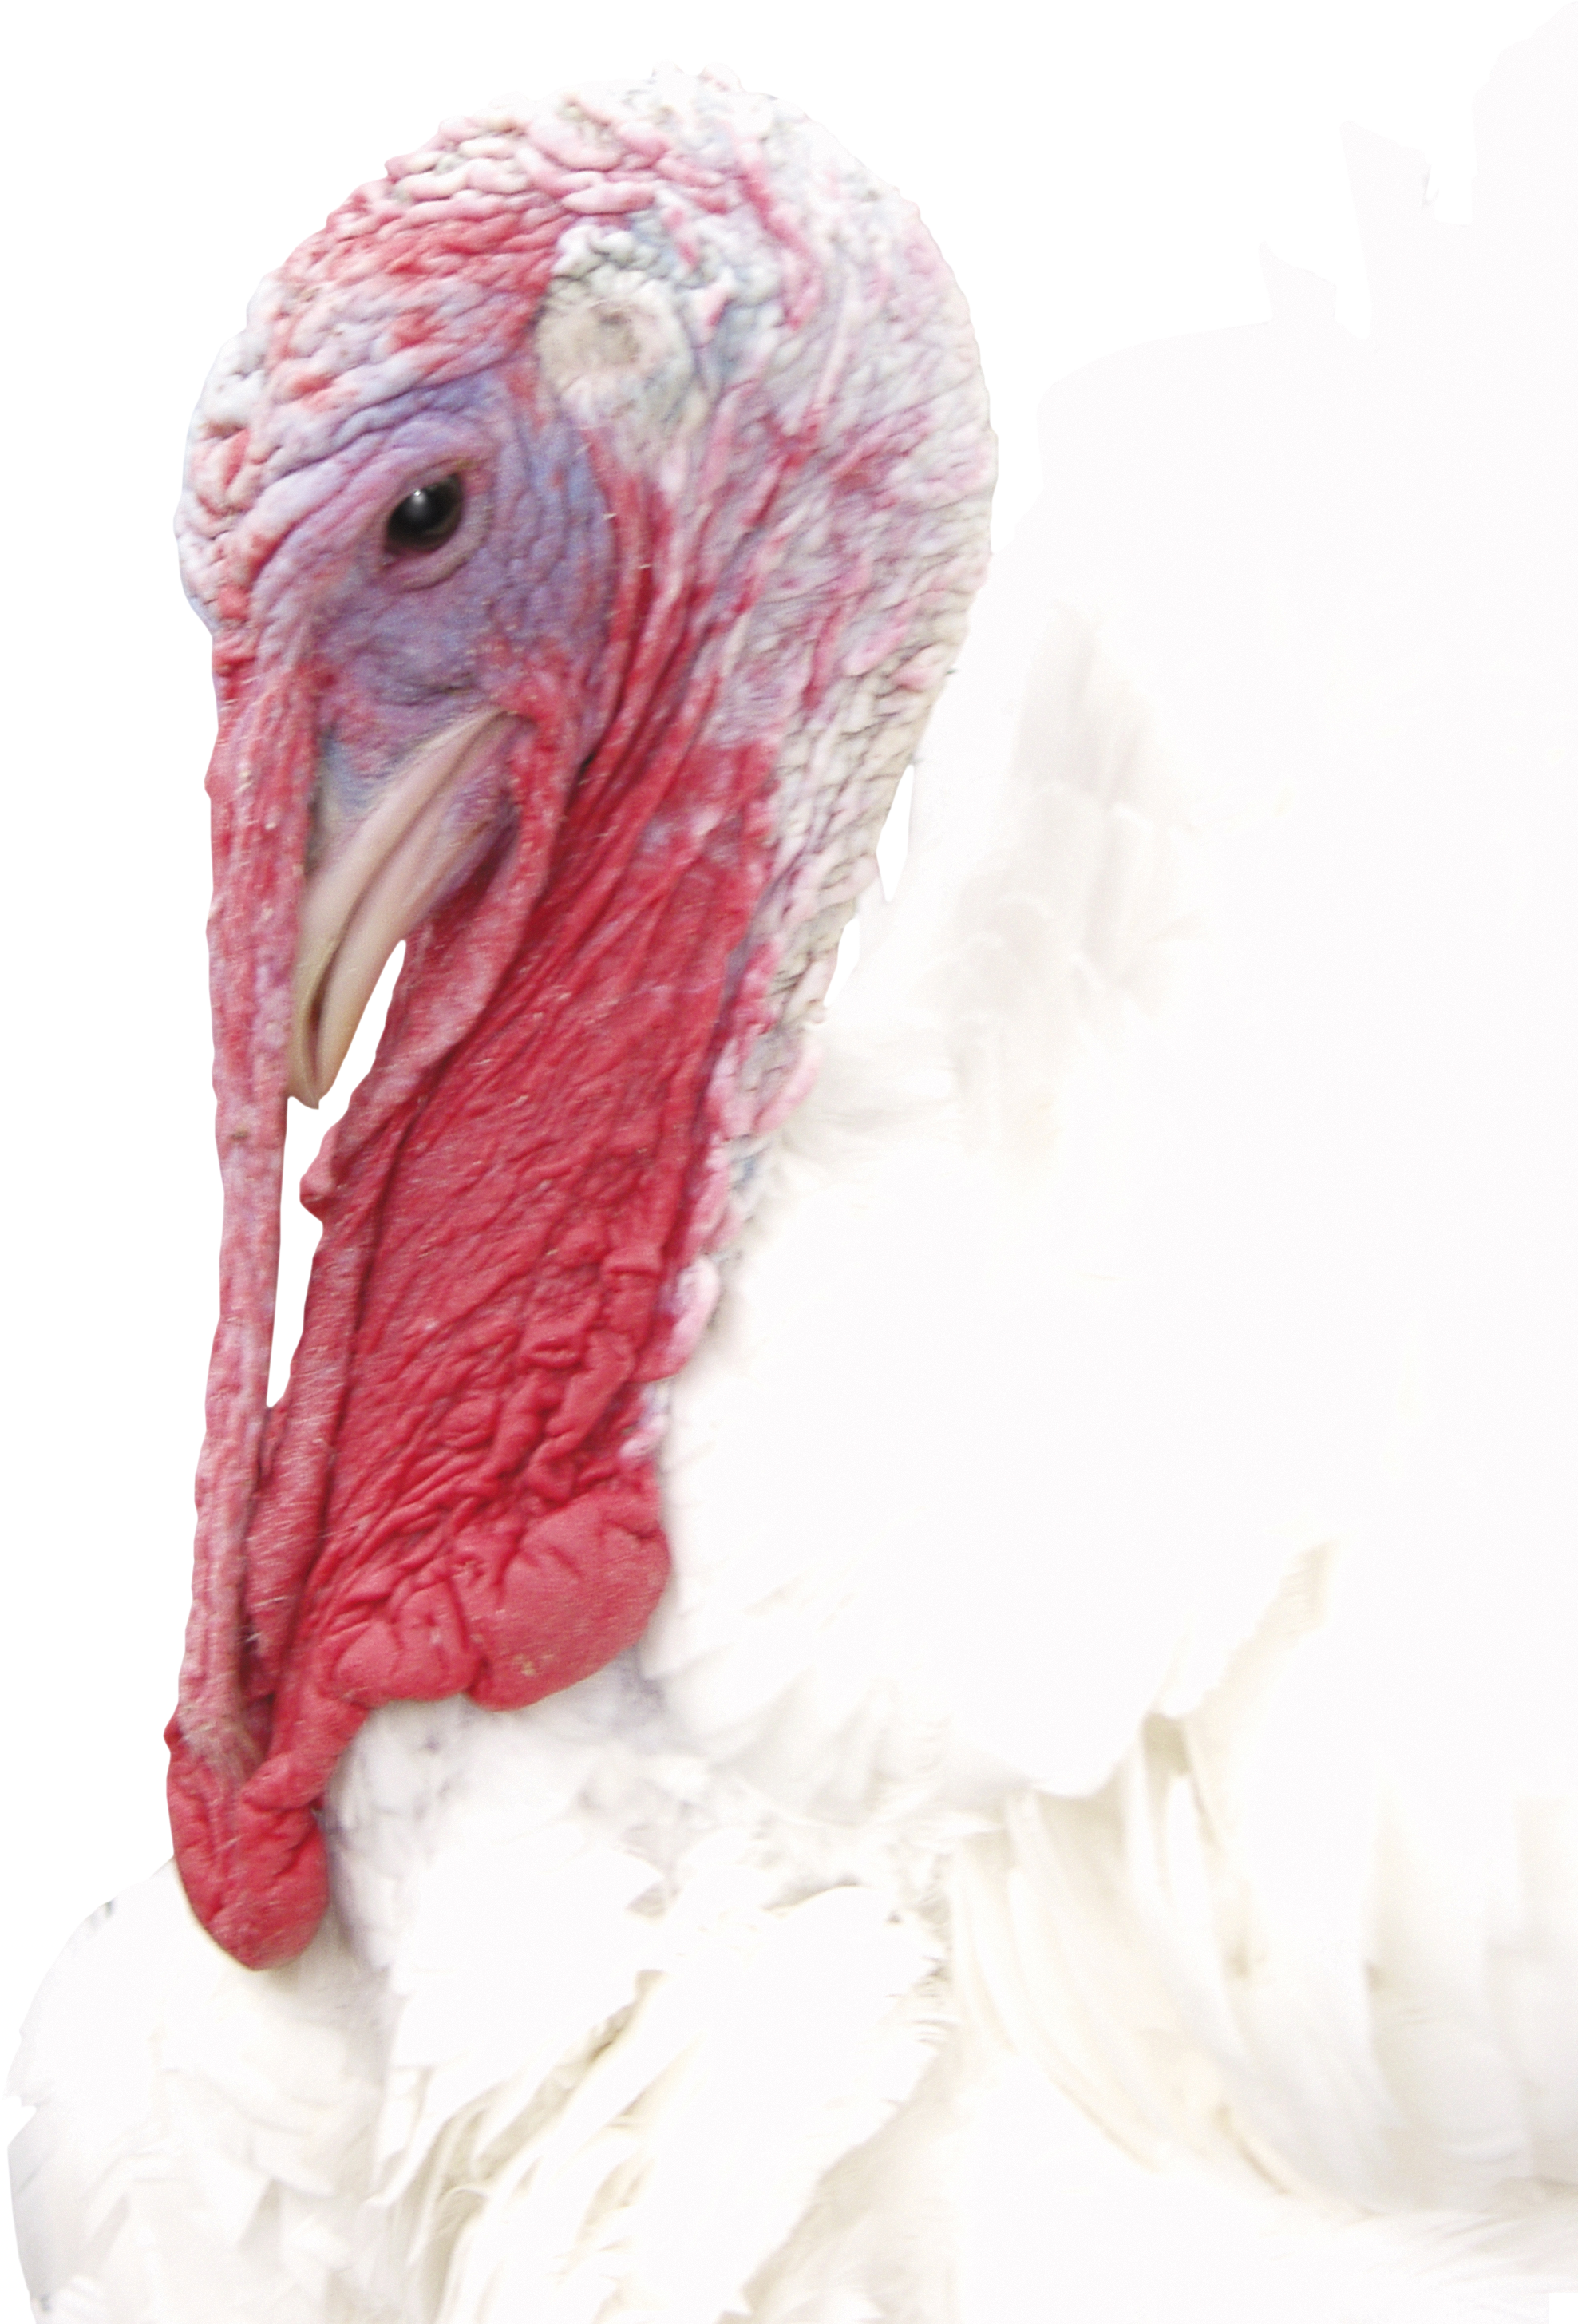 Turkey PNG image free Download